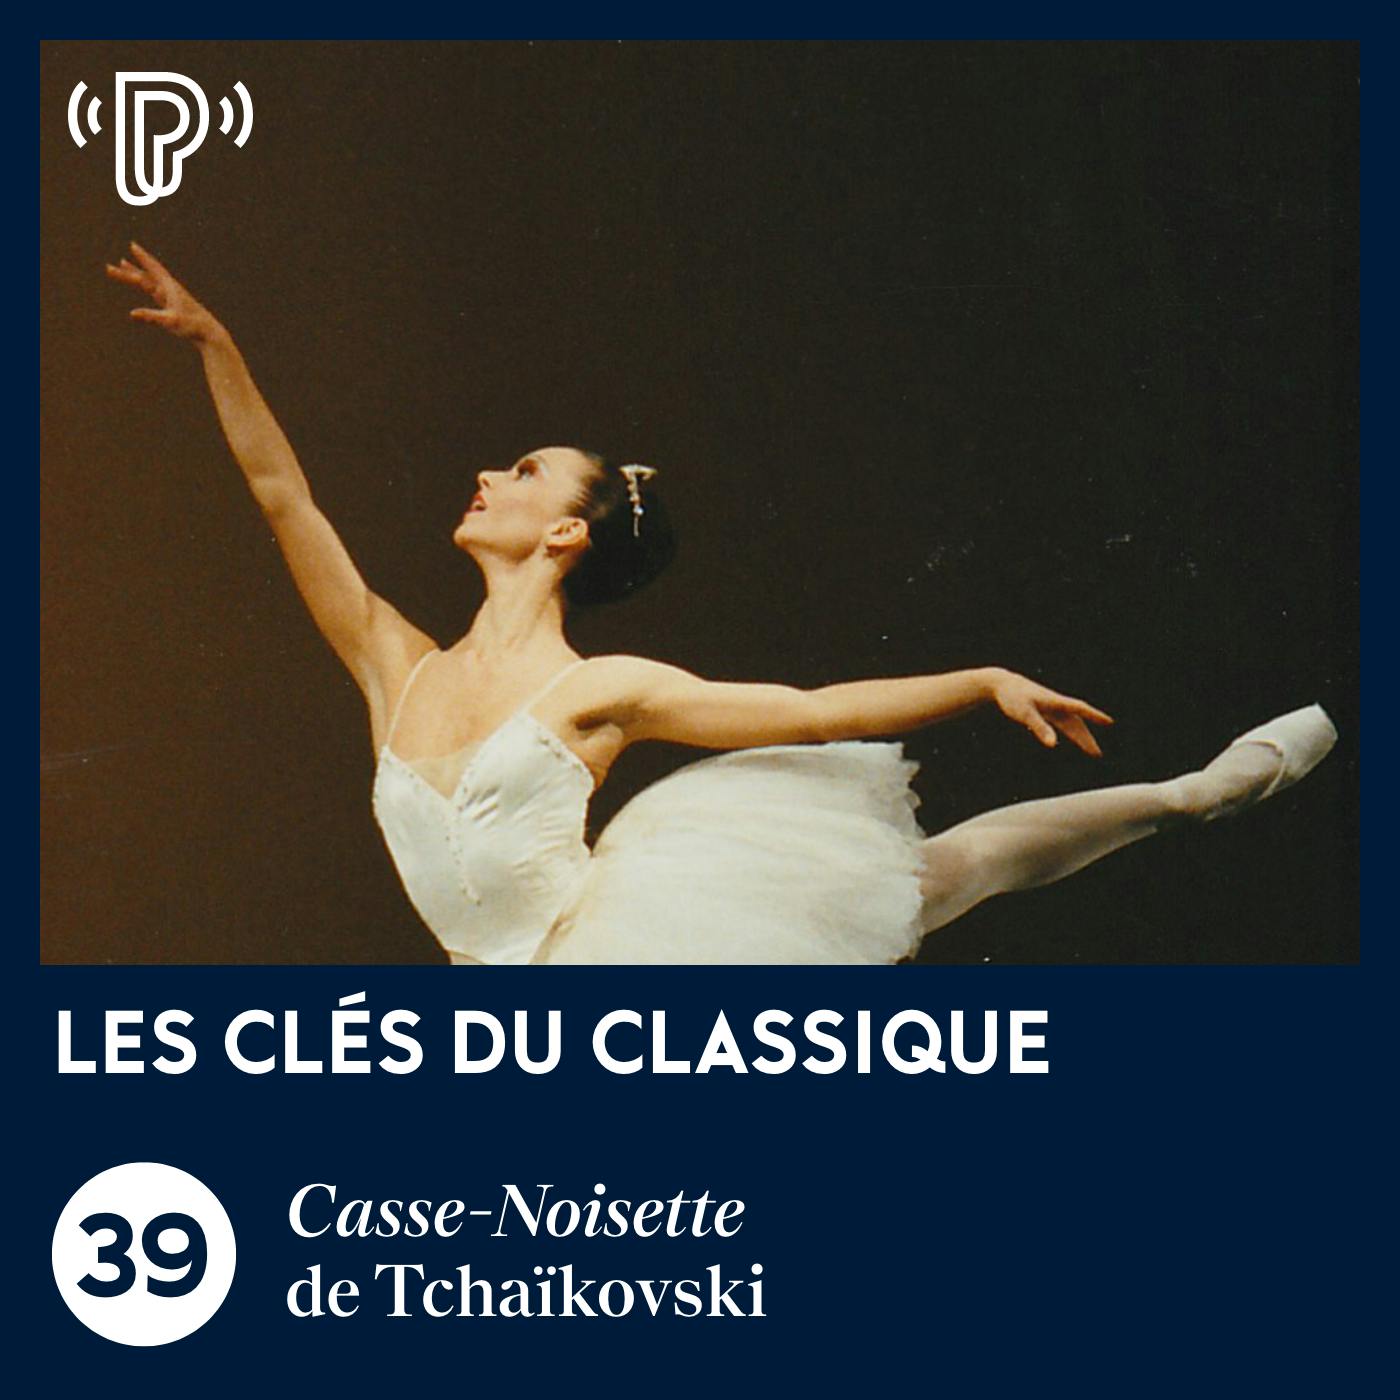 Casse-Noisette de Tchaïkovski | Les Clés du classique #39